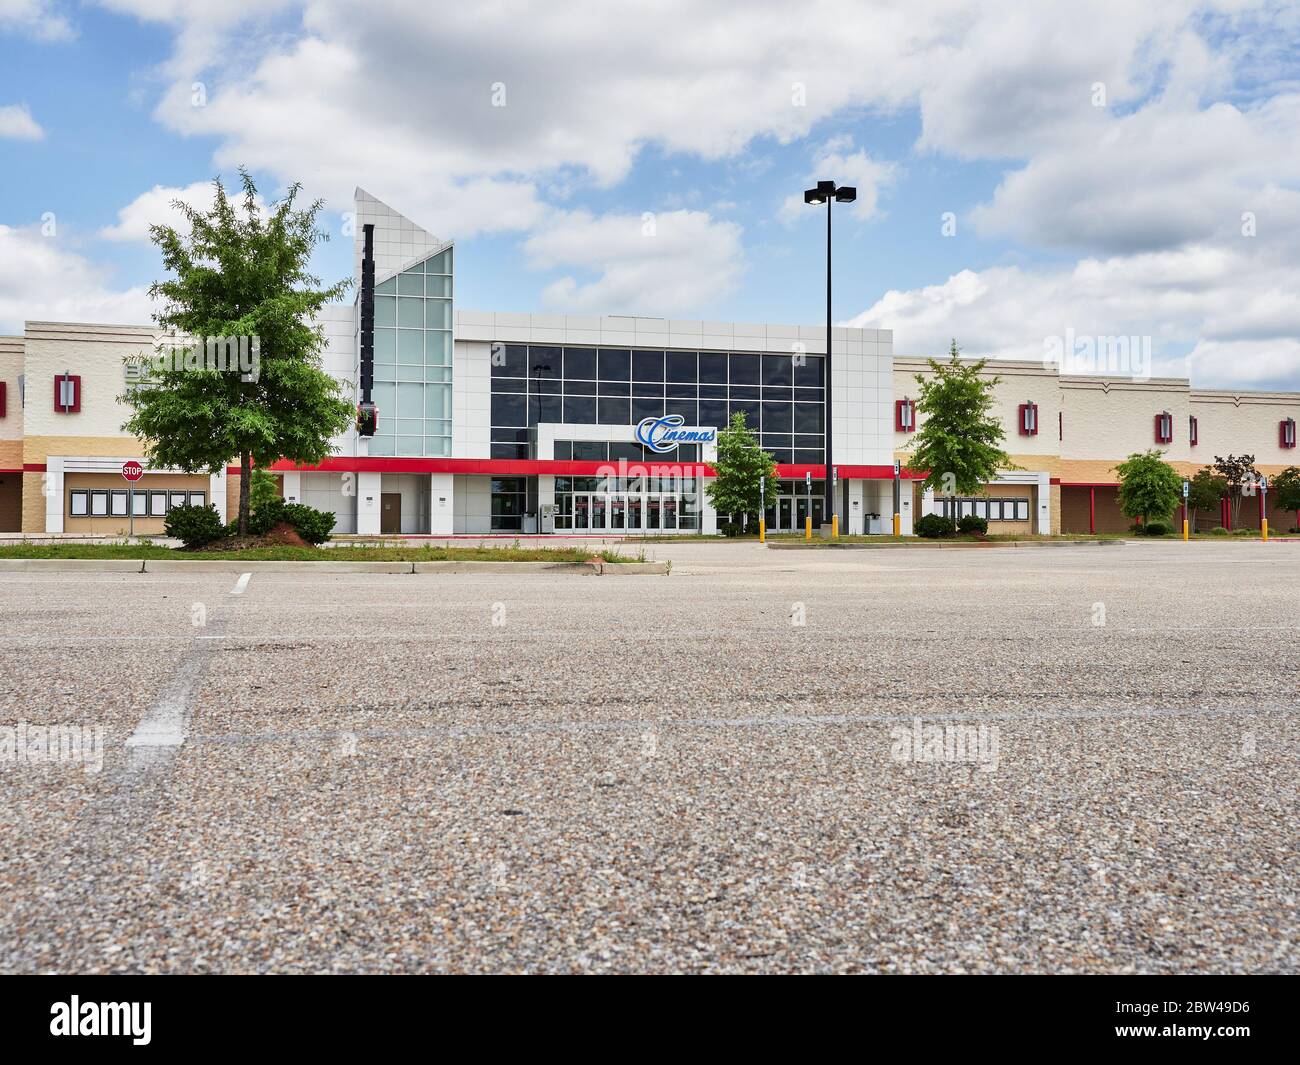 Parcheggio vuoto di un grande cinema o cinema chiuso durante la pandemia di Covid 19 (Corona Virus), a Montgomery Alabama, Stati Uniti. Foto Stock